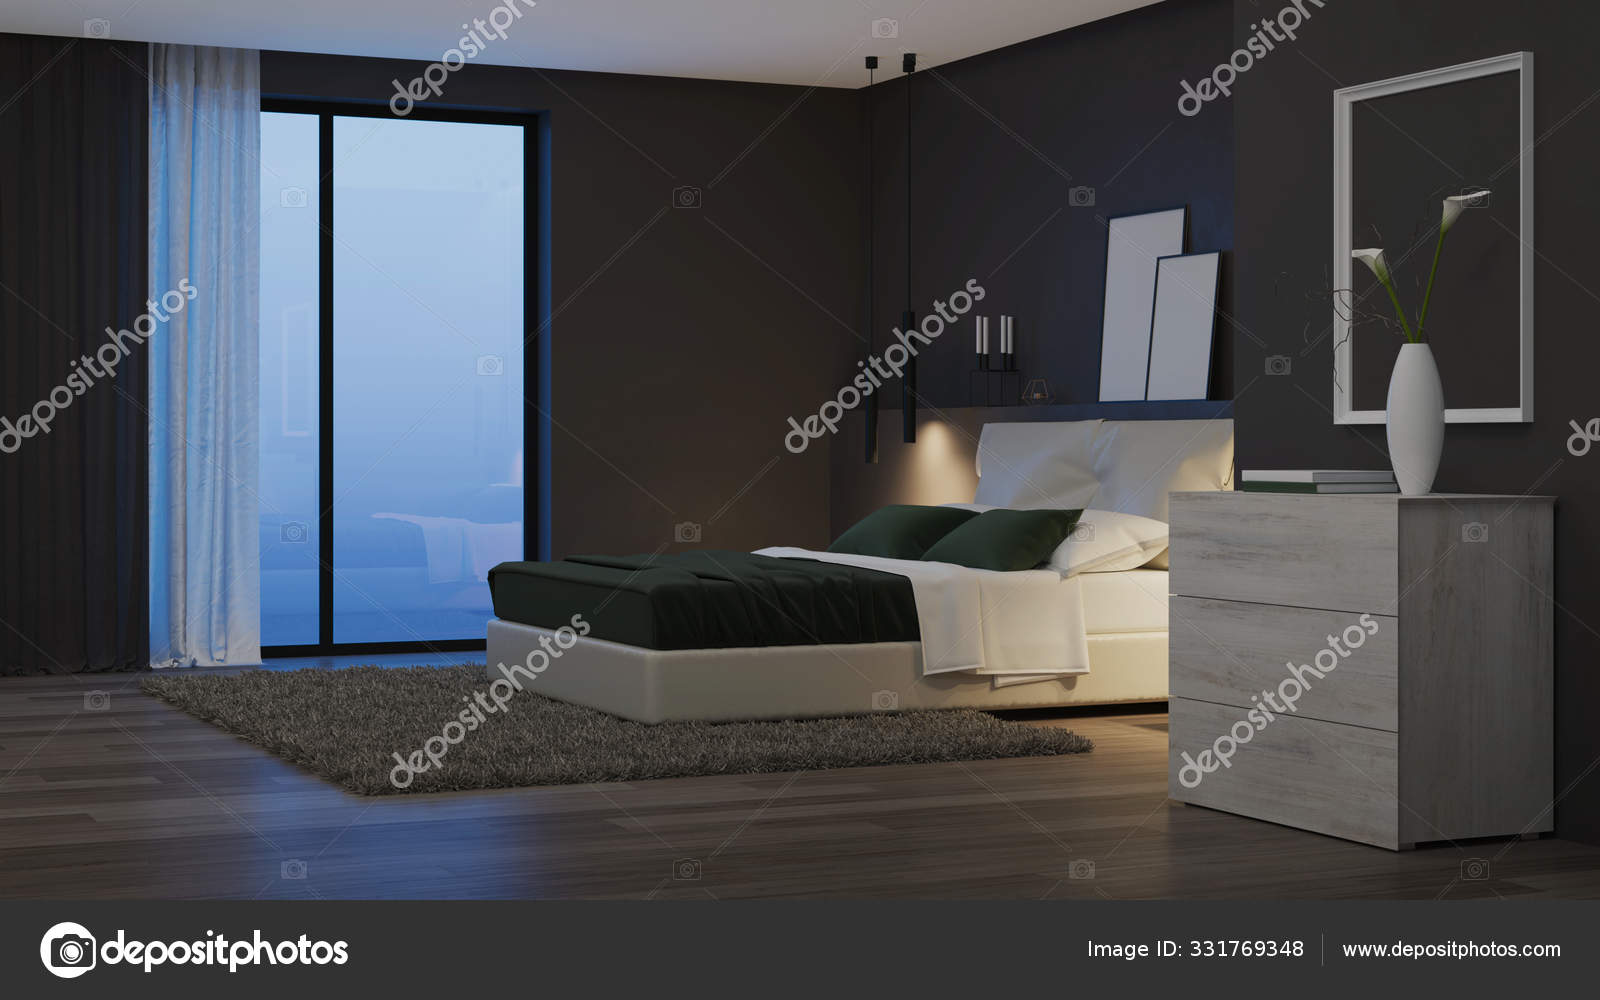 Interior Casa Moderna Quarto Com Paredes Escuras Mobiliário Brilhante Boa  fotos, imagens de © ArtemP1 #331769162